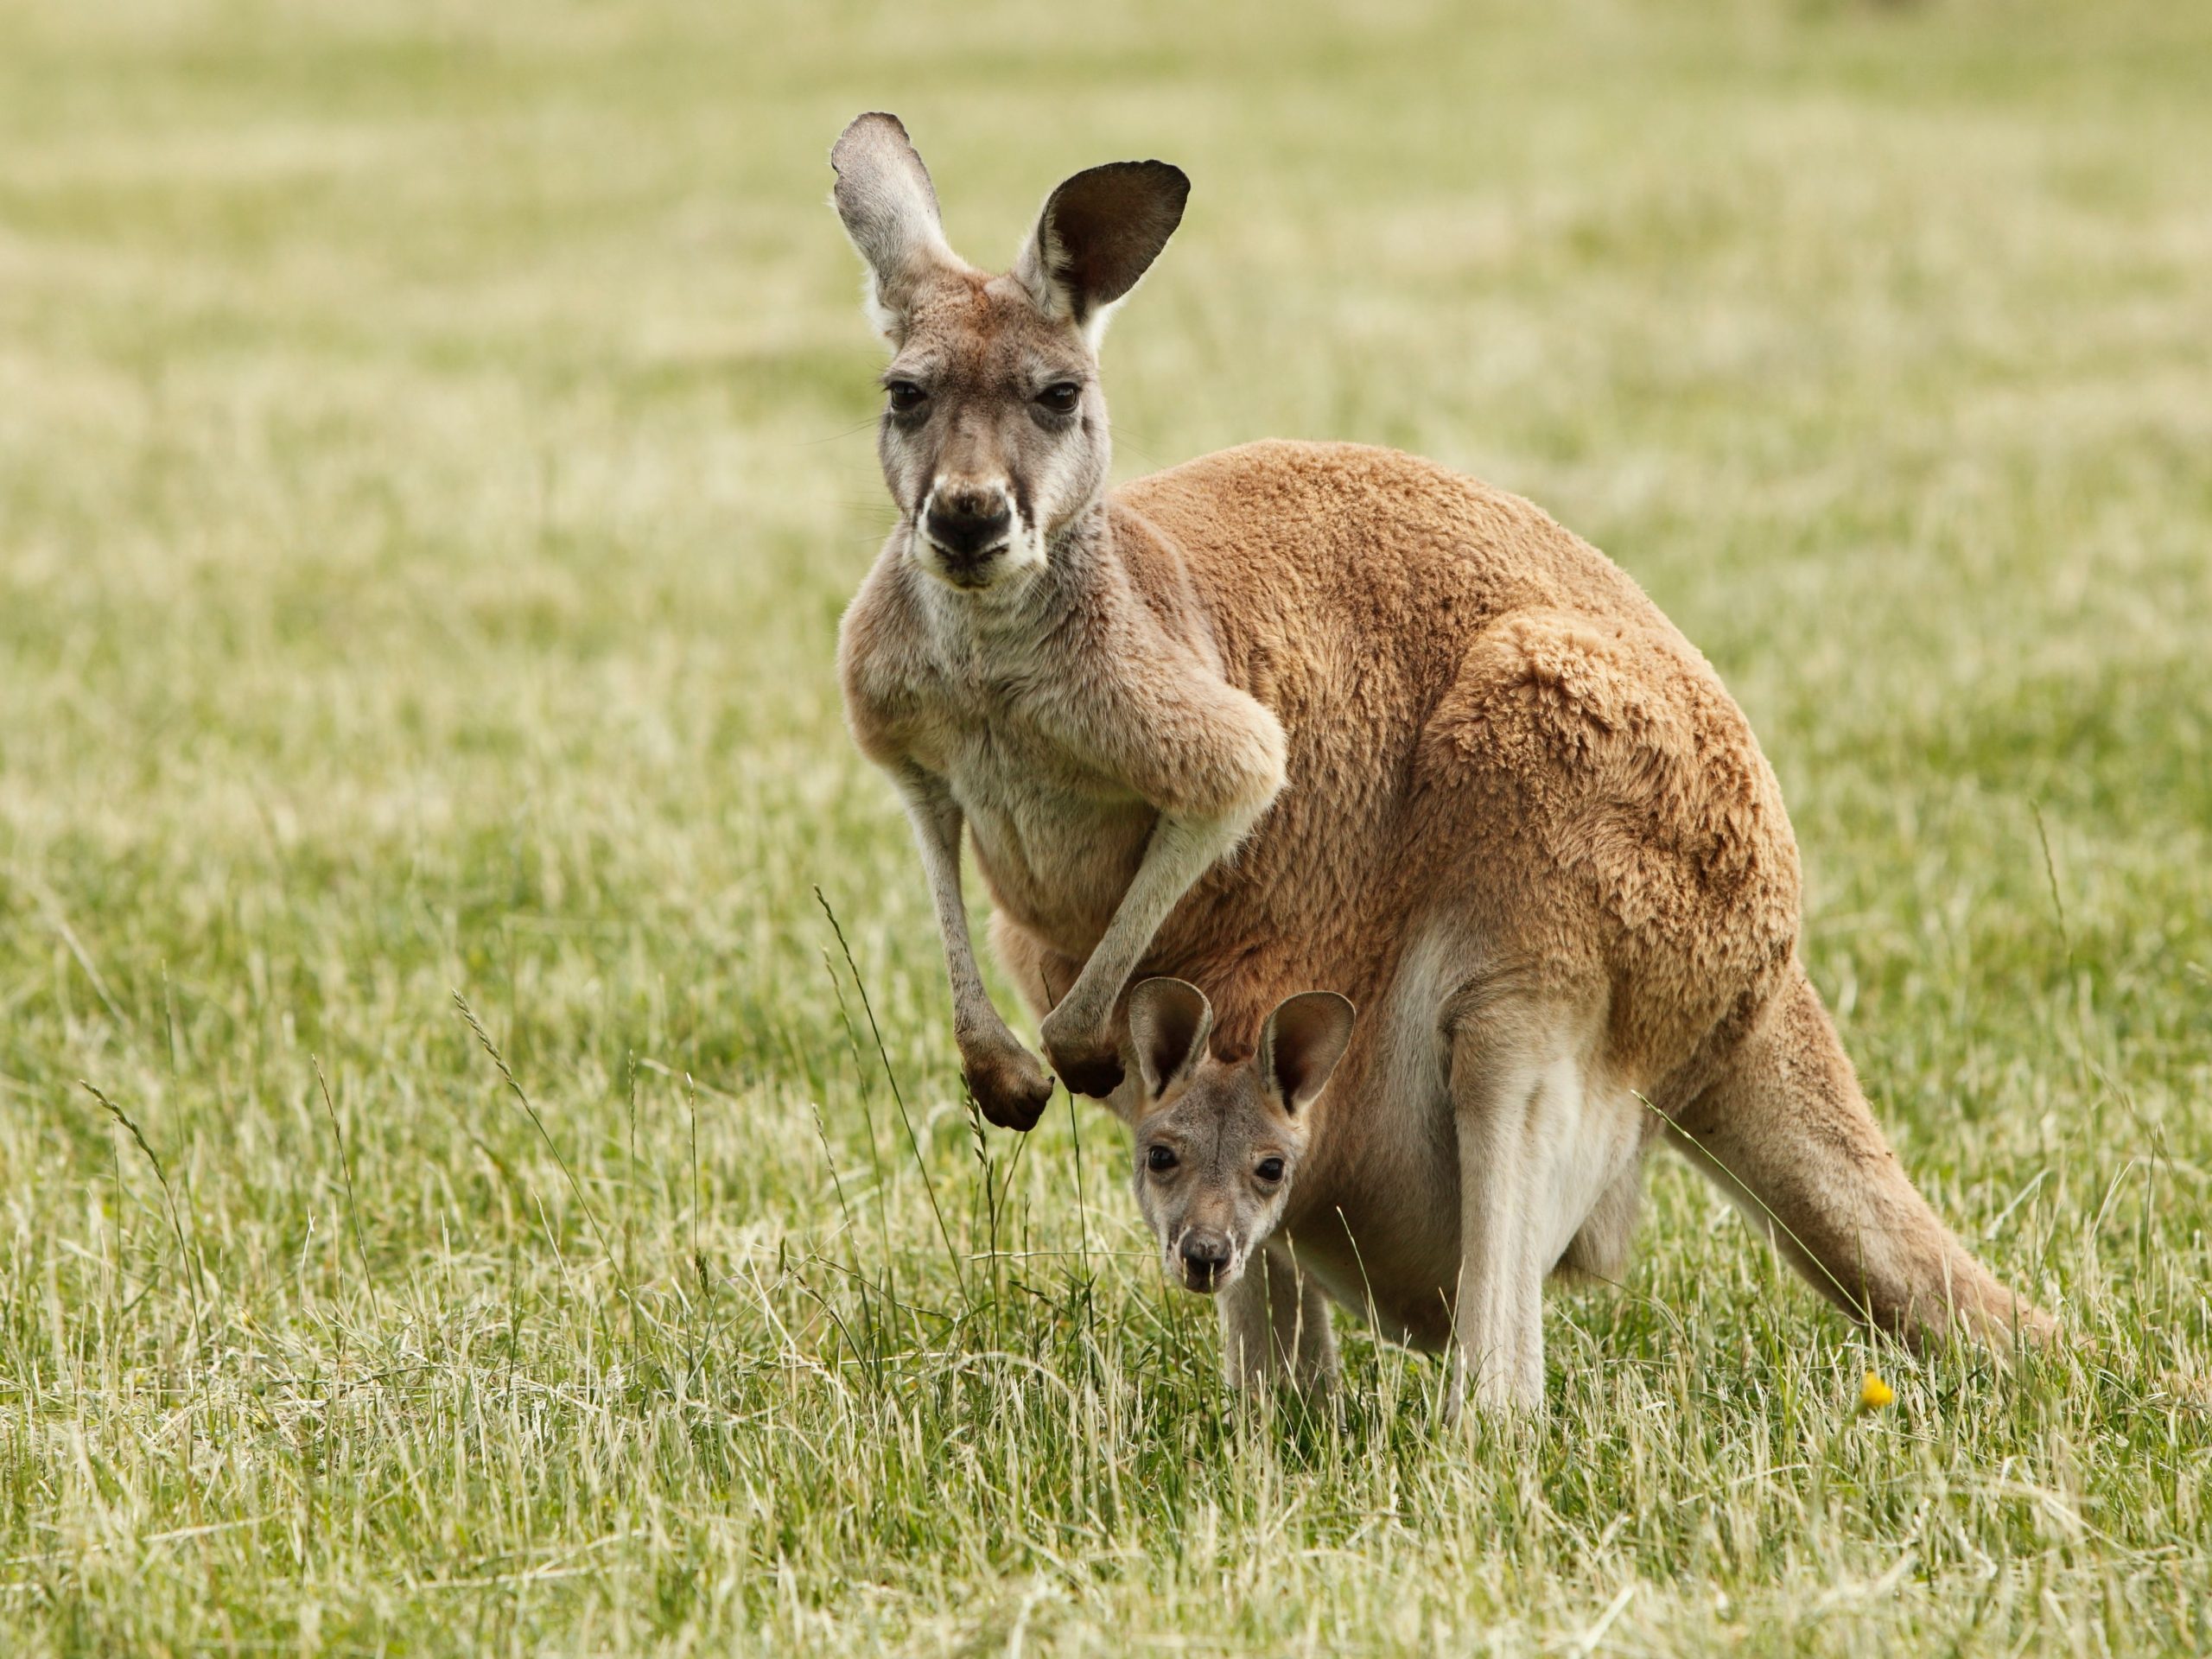 En Australie, un homme de 77 ans a été tué par un kangourou domestique qu’il hébergeait comme animal de compagnie.